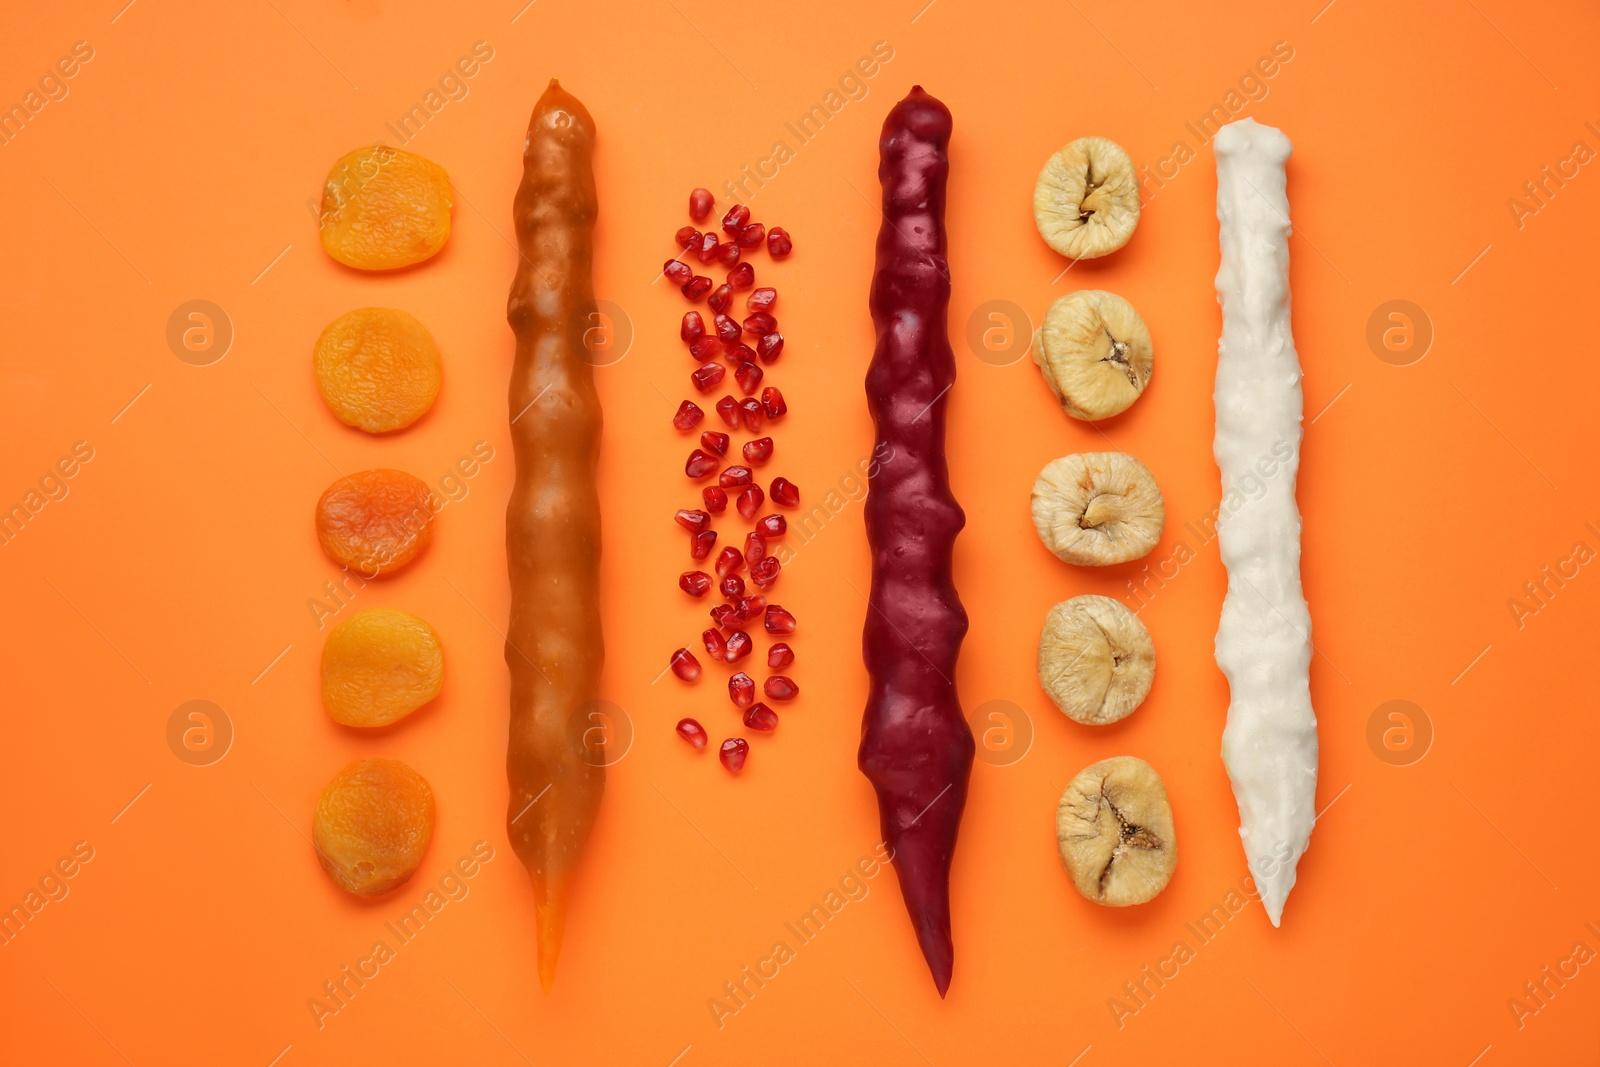 Photo of Delicious churchkhelas and fruits on orange background, flat lay